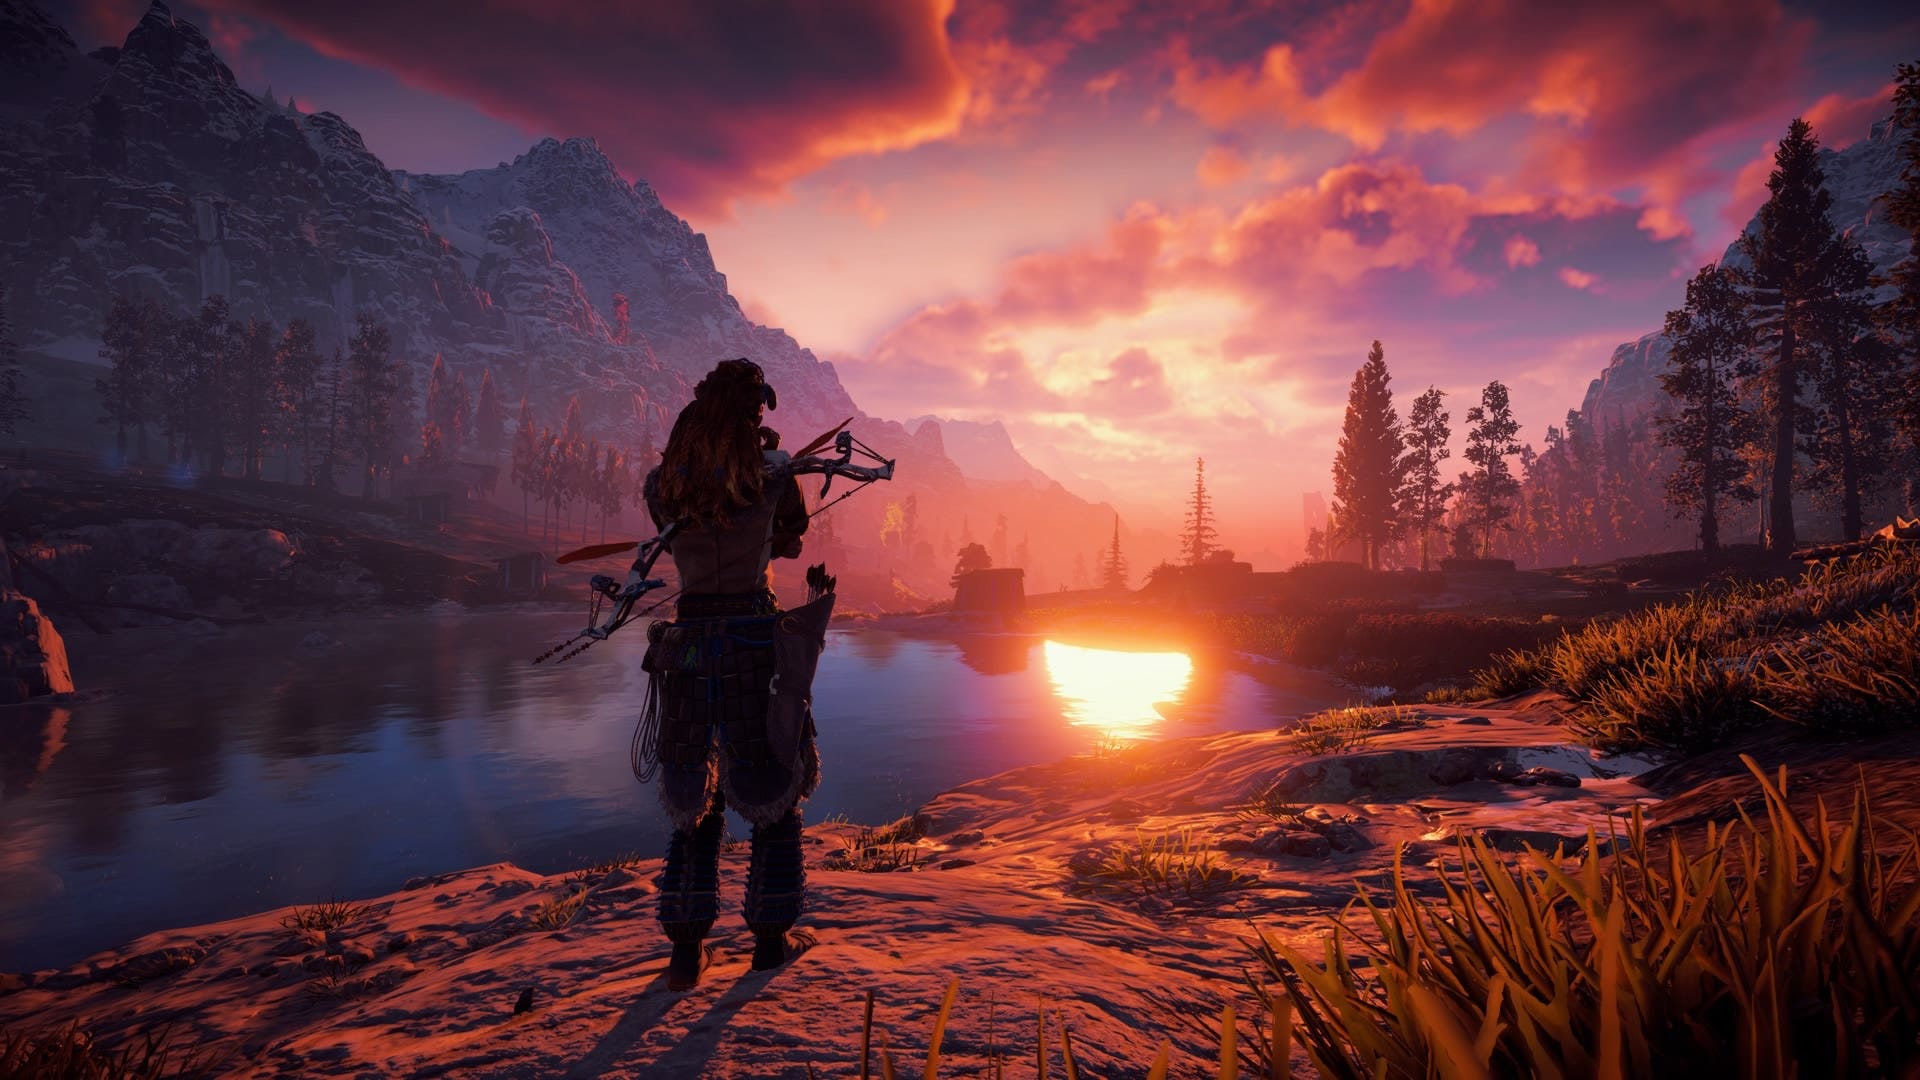 Find a 4K display to watch this stunning Horizon: Zero Dawn gameplay  trailer